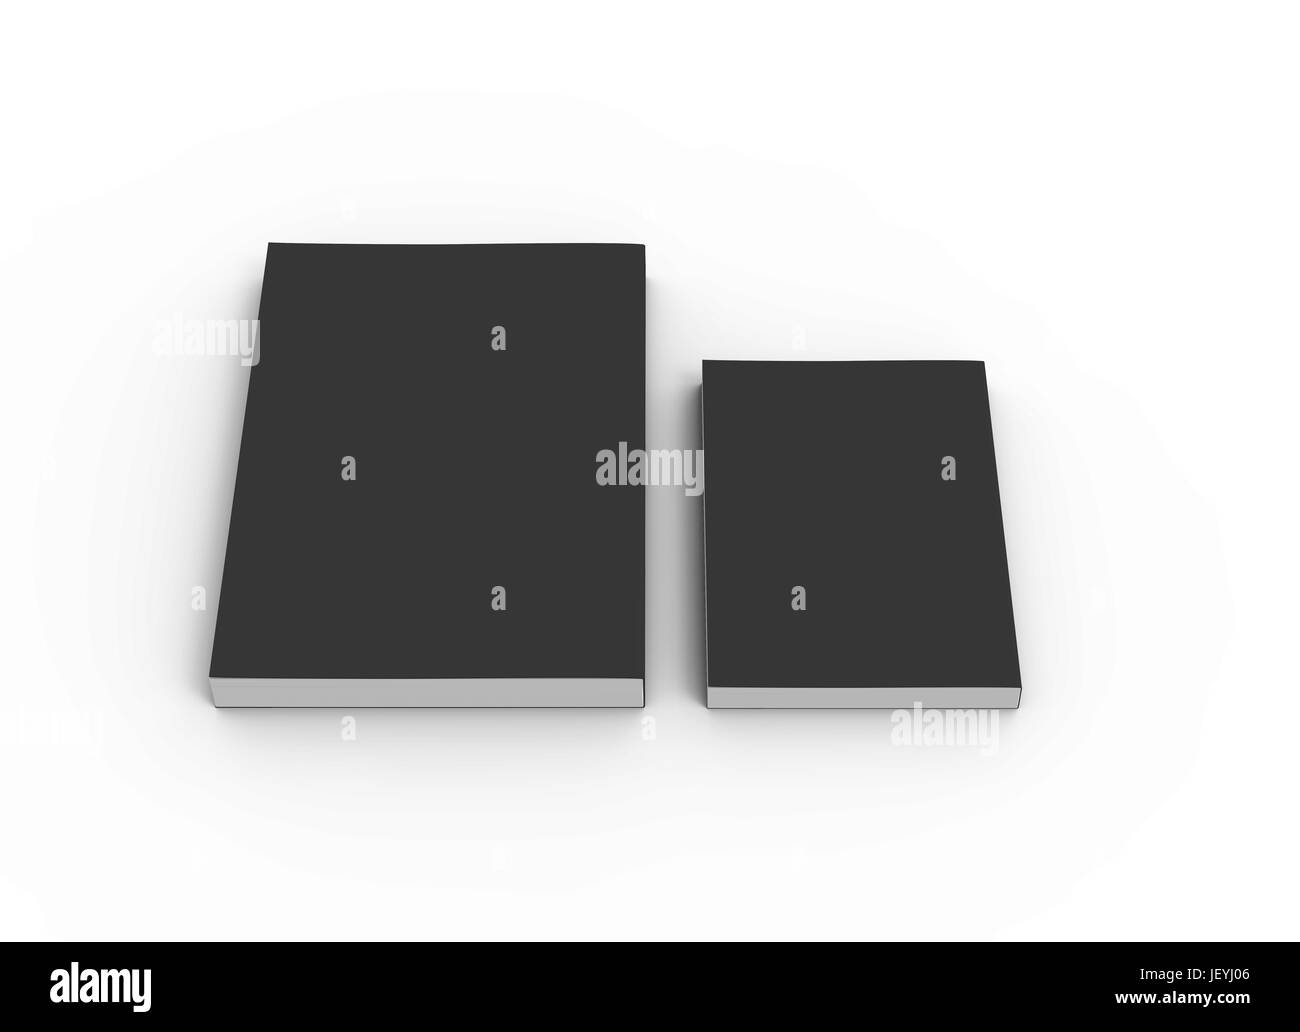 Vierge noire deux livres fermés de rendu 3D, isolé sur fond blanc, elevated view Banque D'Images